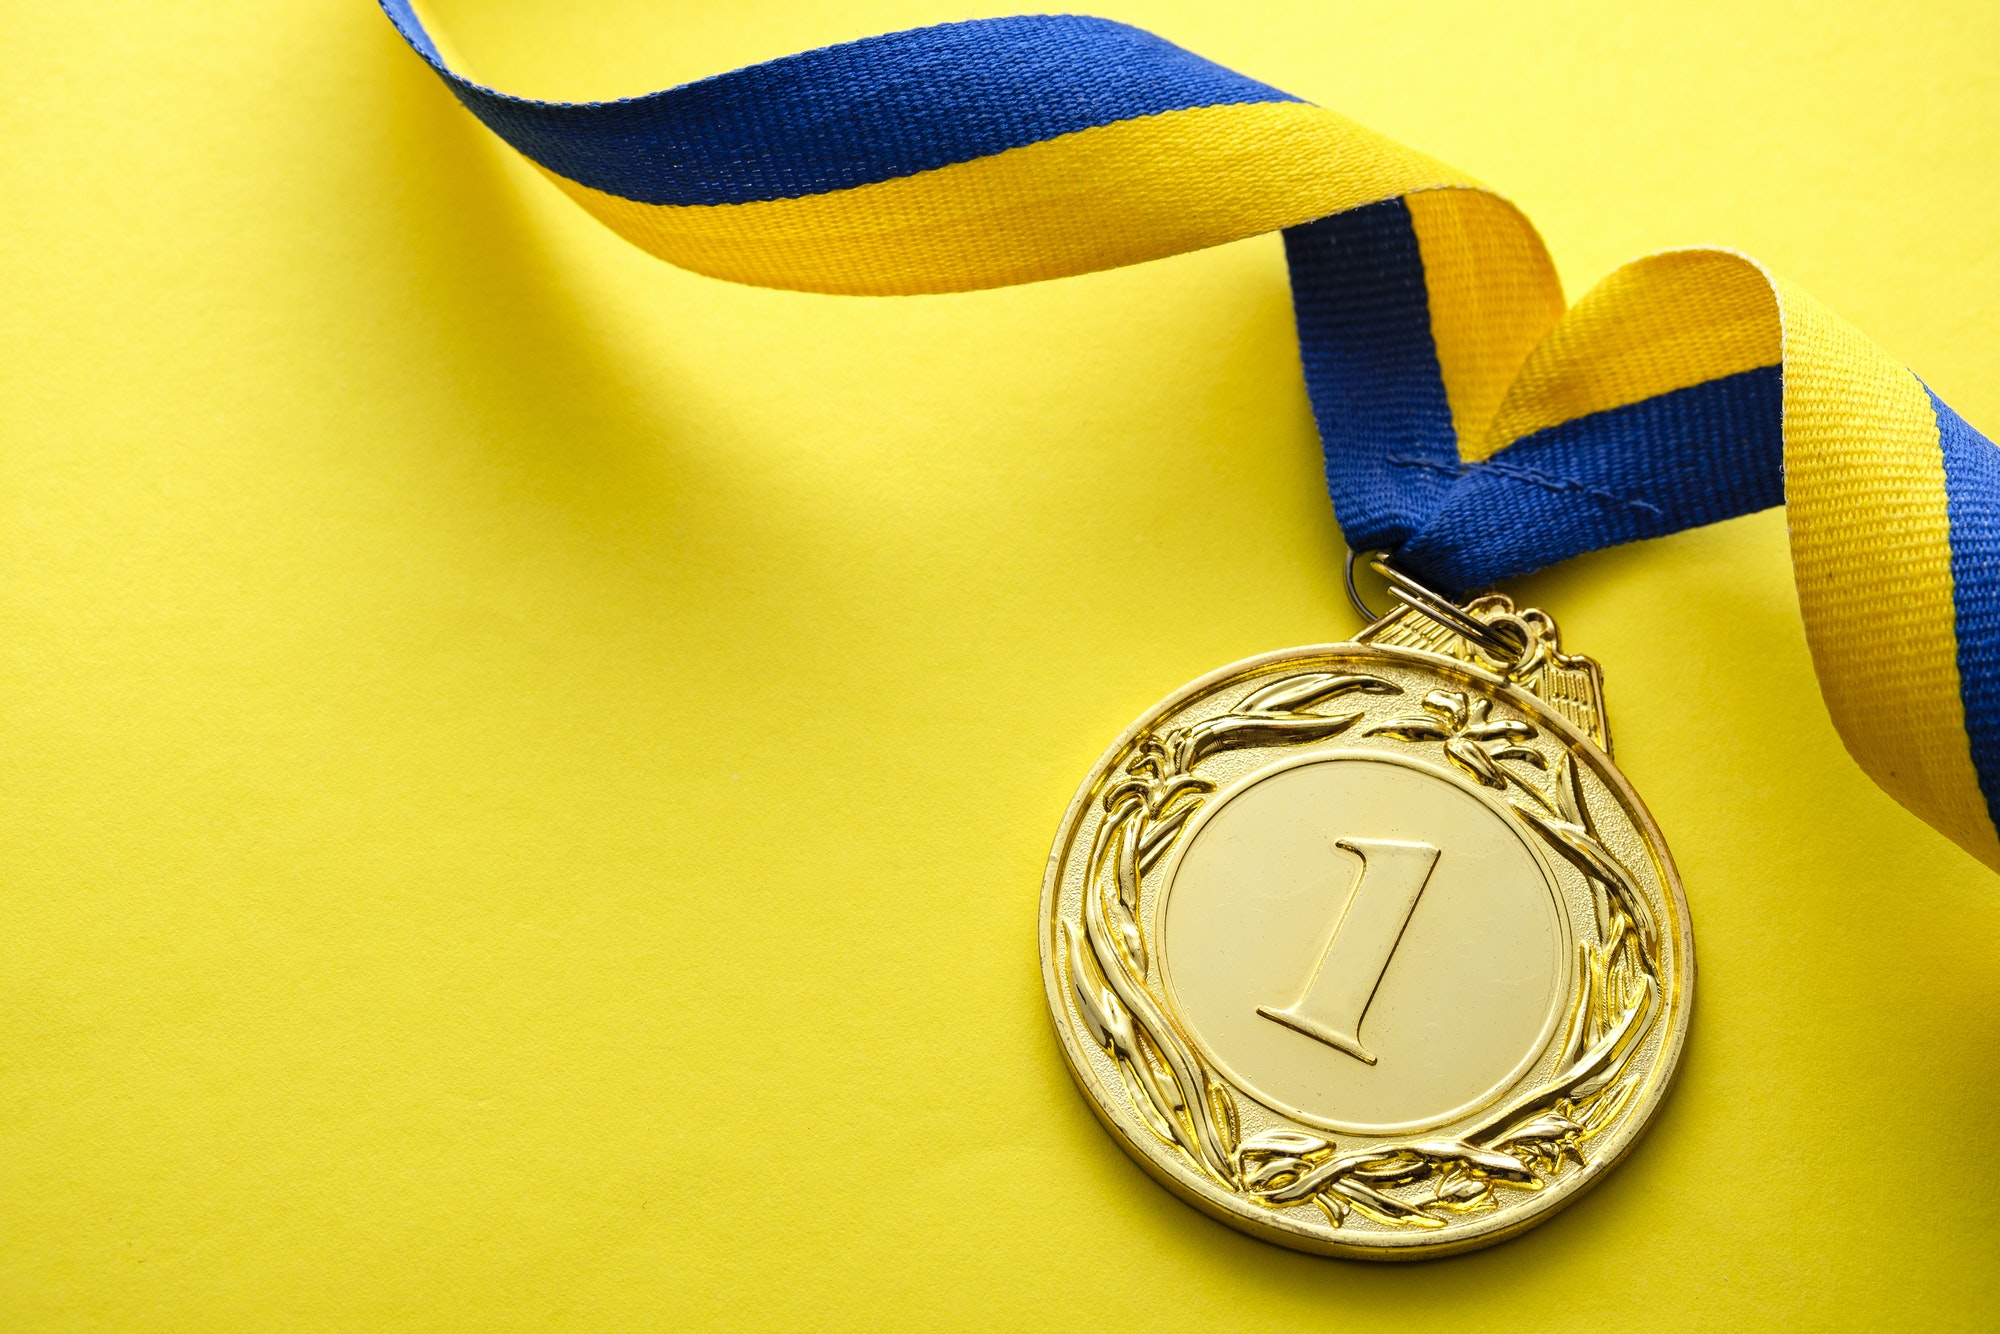 Gold medallion for the winner or champion